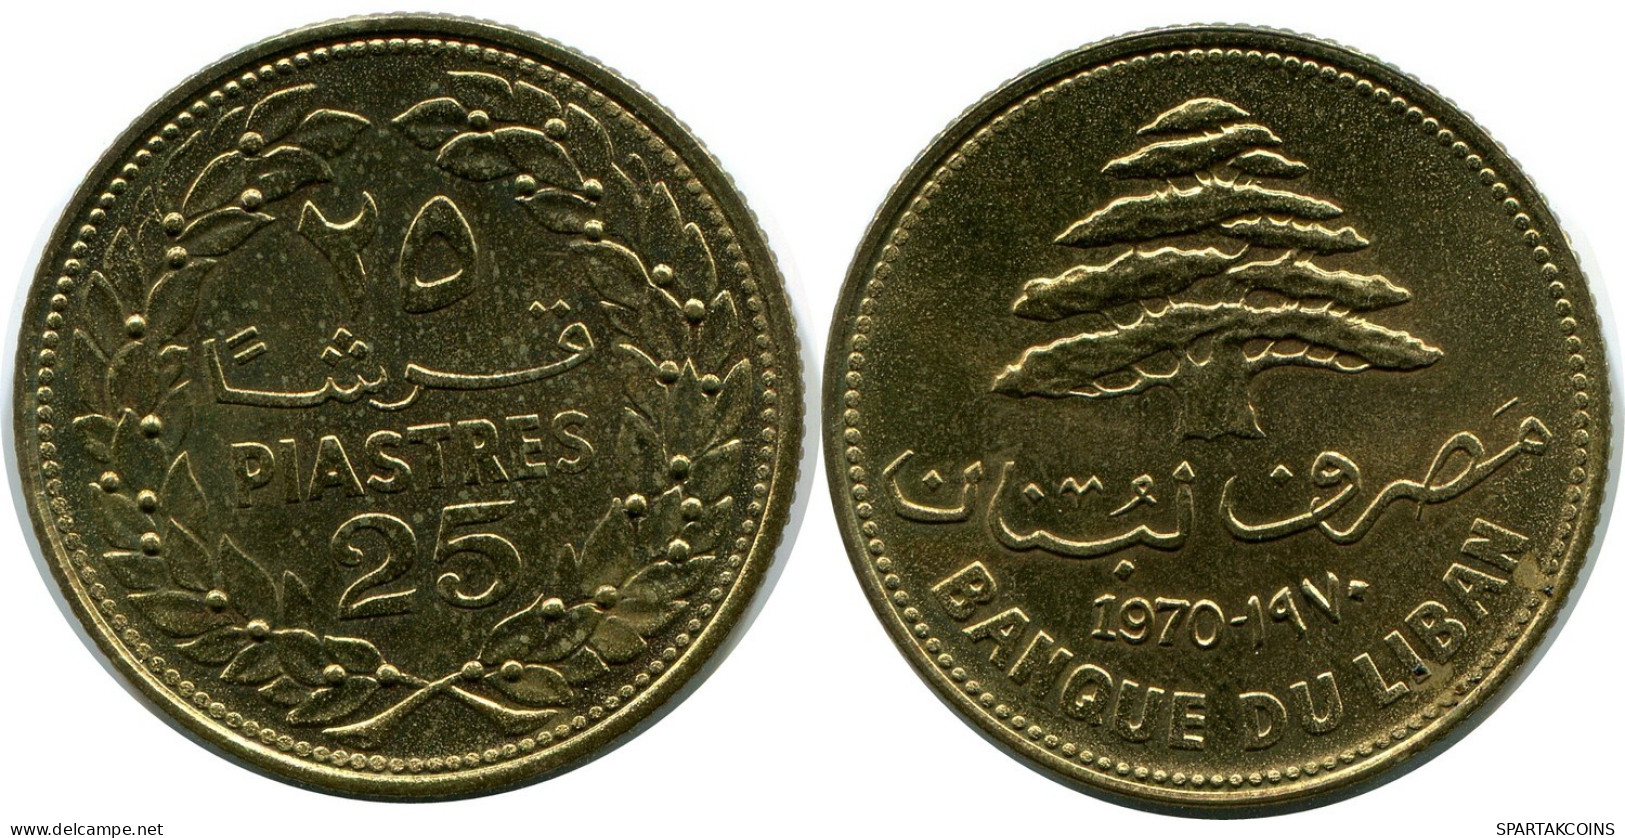 25 PIASTRES 1970 LEBANON Coin #AP385.U.A - Lebanon